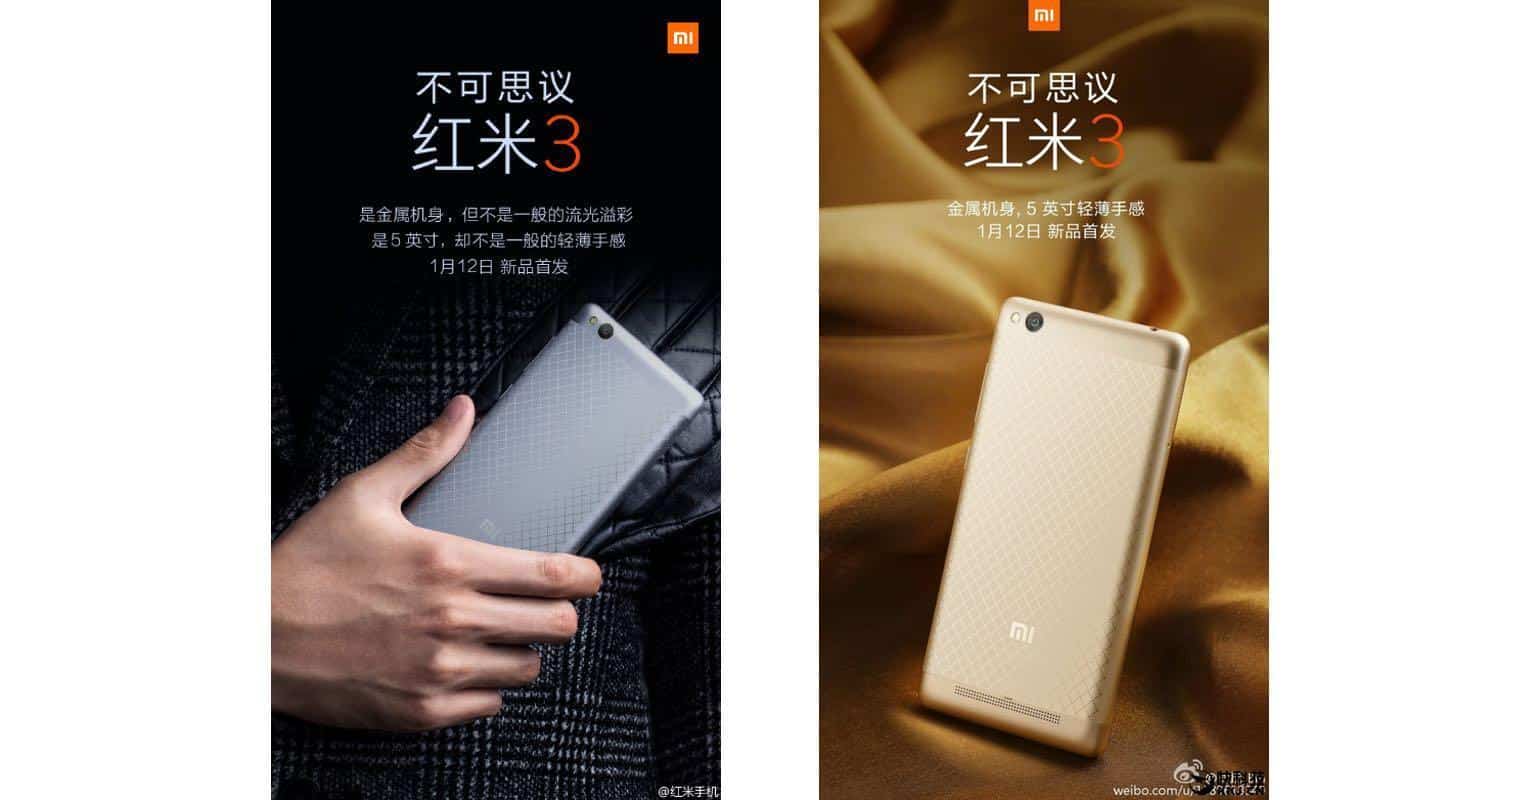 De Xiaomi Redmi 3 is vanaf 12 januari te koop